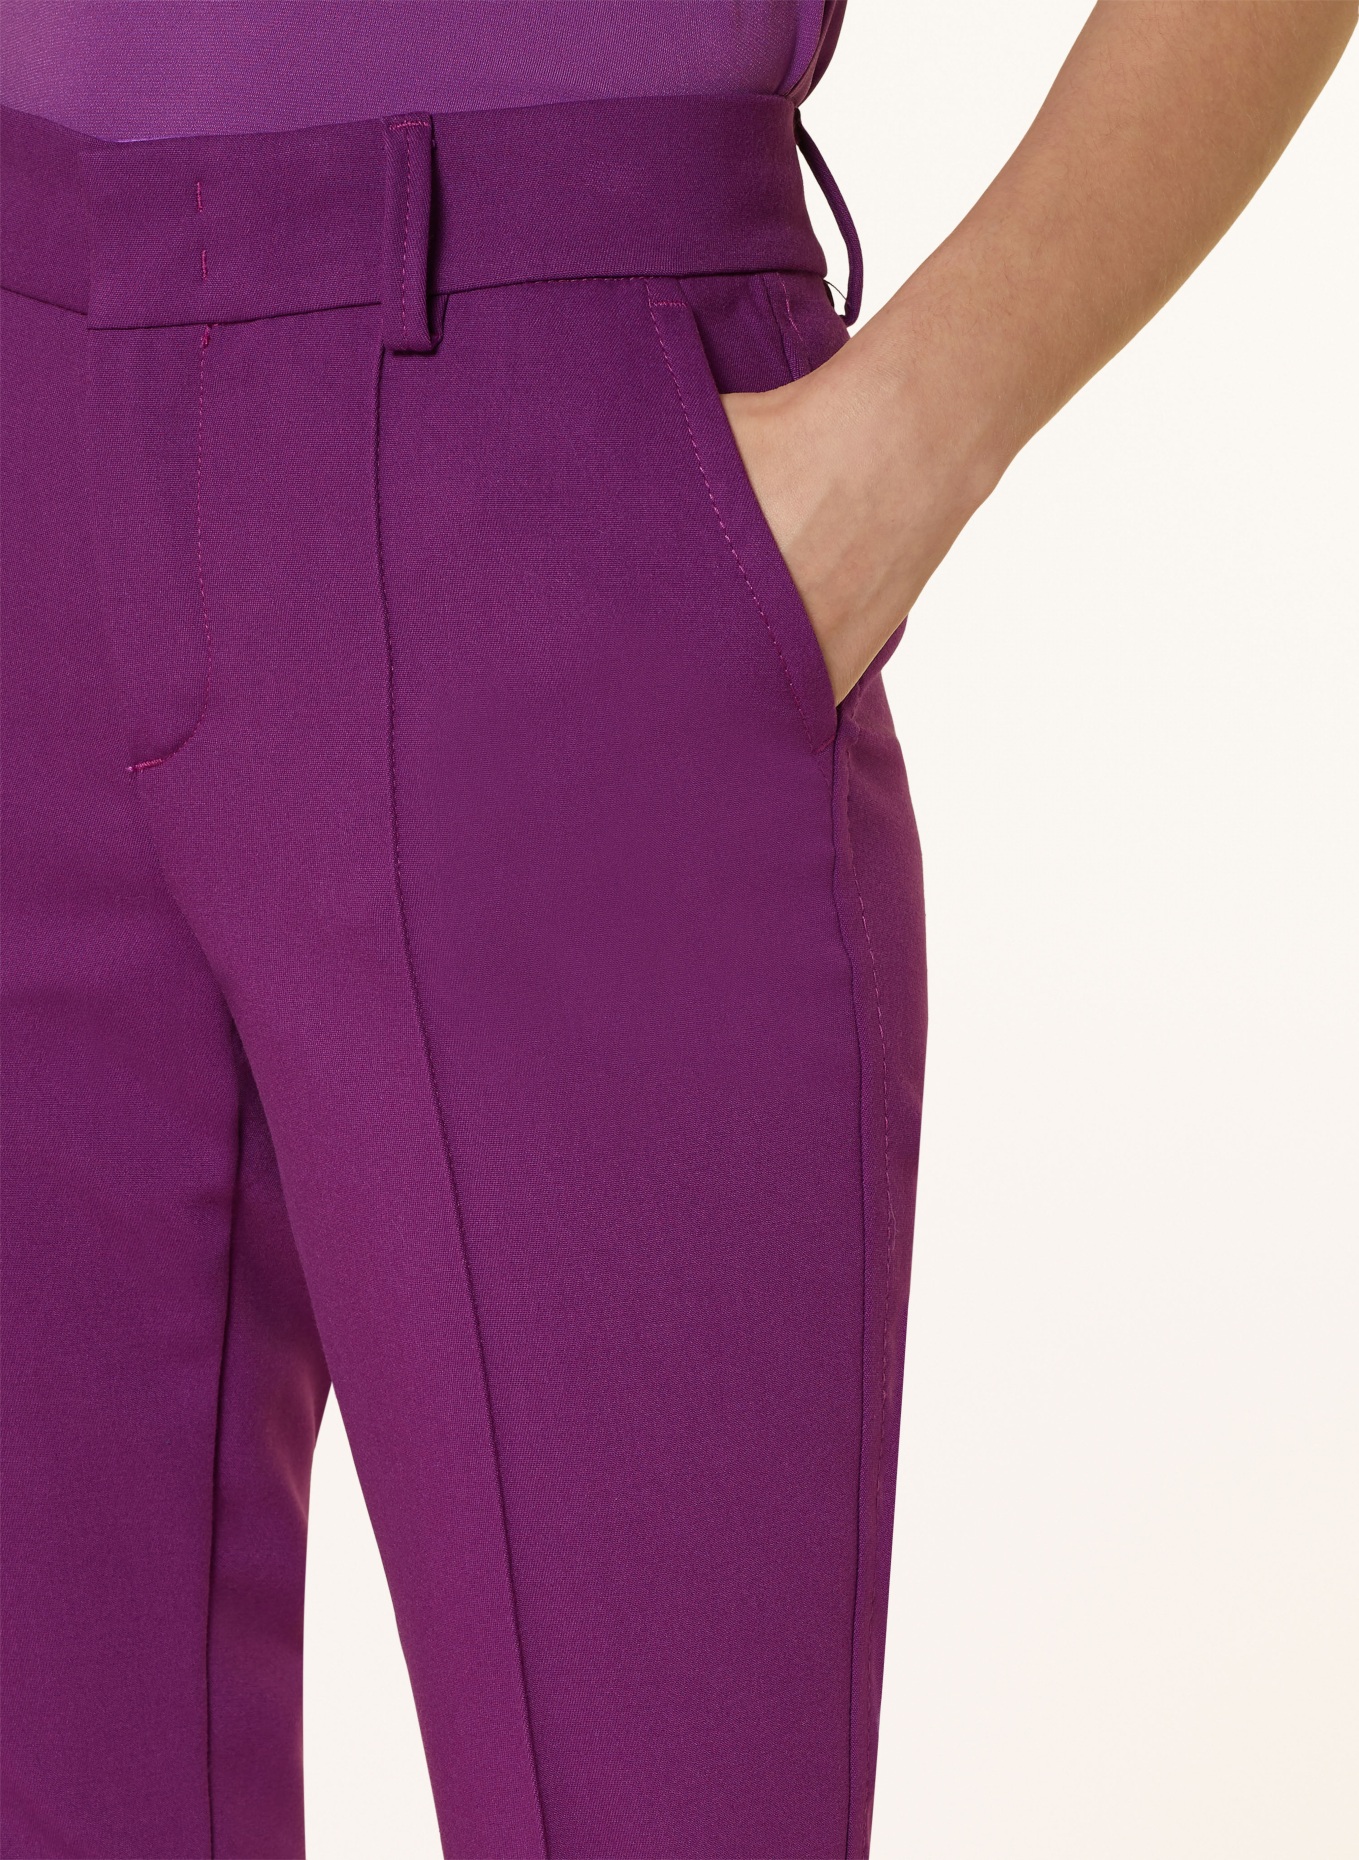 oui 7/8 pants, Color: PURPLE (Image 5)